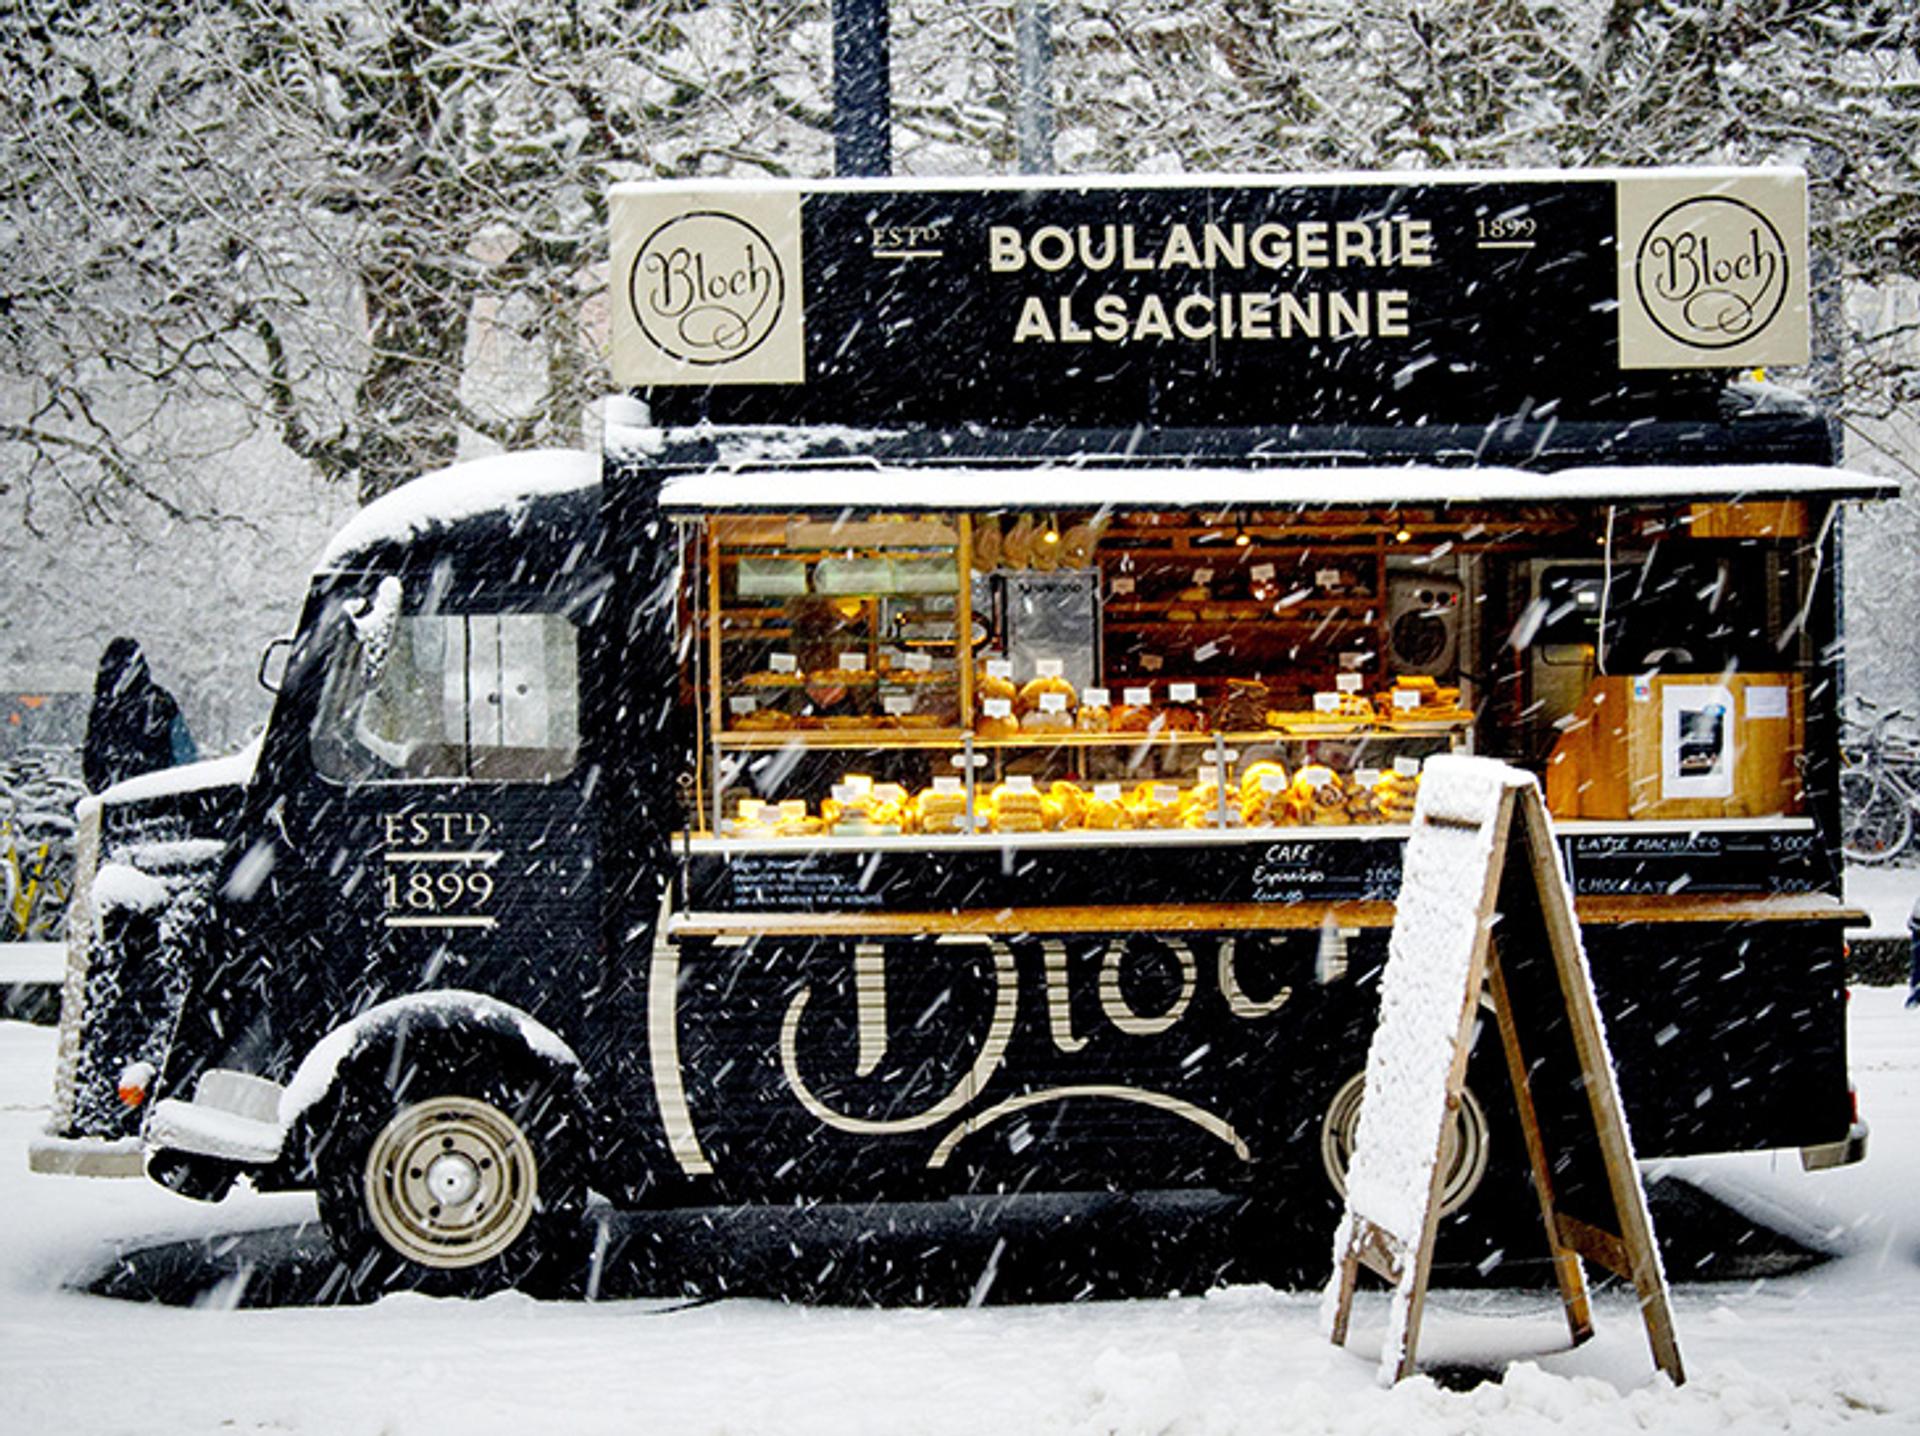 camión de comida Alsacience Boulangerie negro estacionado en medio de una tormenta de nieve y con un símbolo fuera